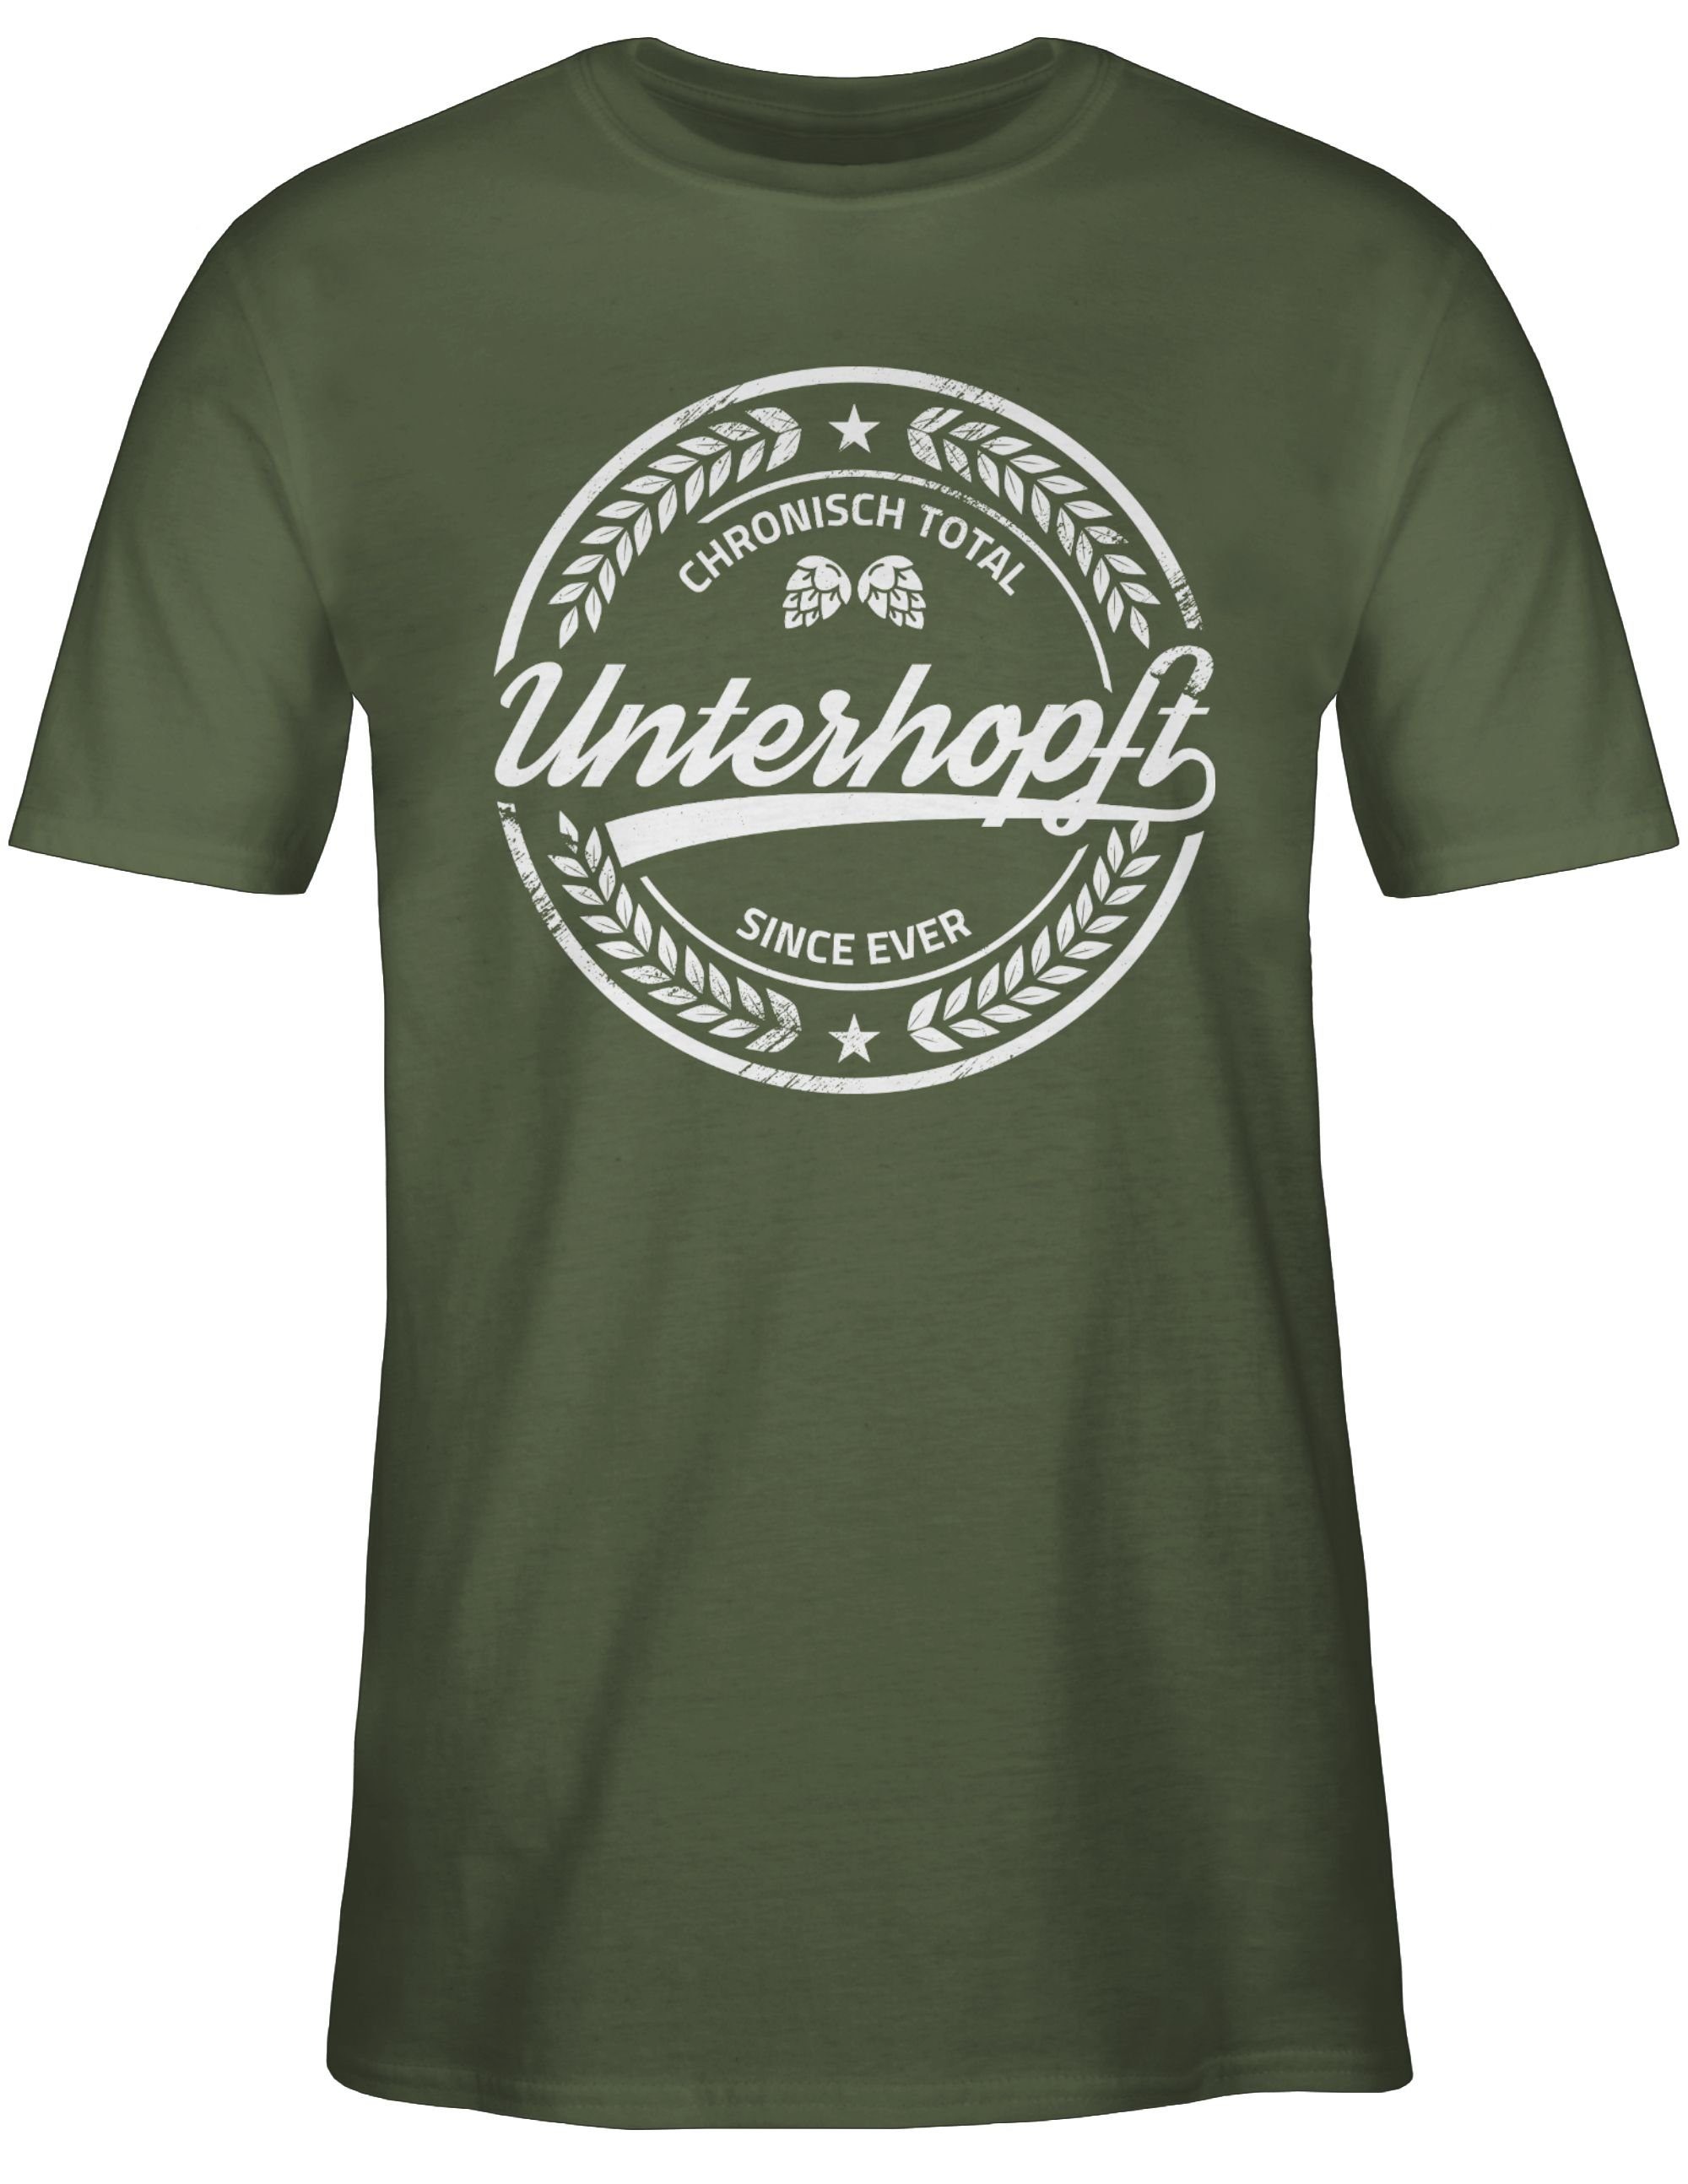 Oktoberfest Bier Geschenk Grün Bierliebhaber Shirtracer Army Chronisch 3 Herren Mode T-Shirt für Unterhopft